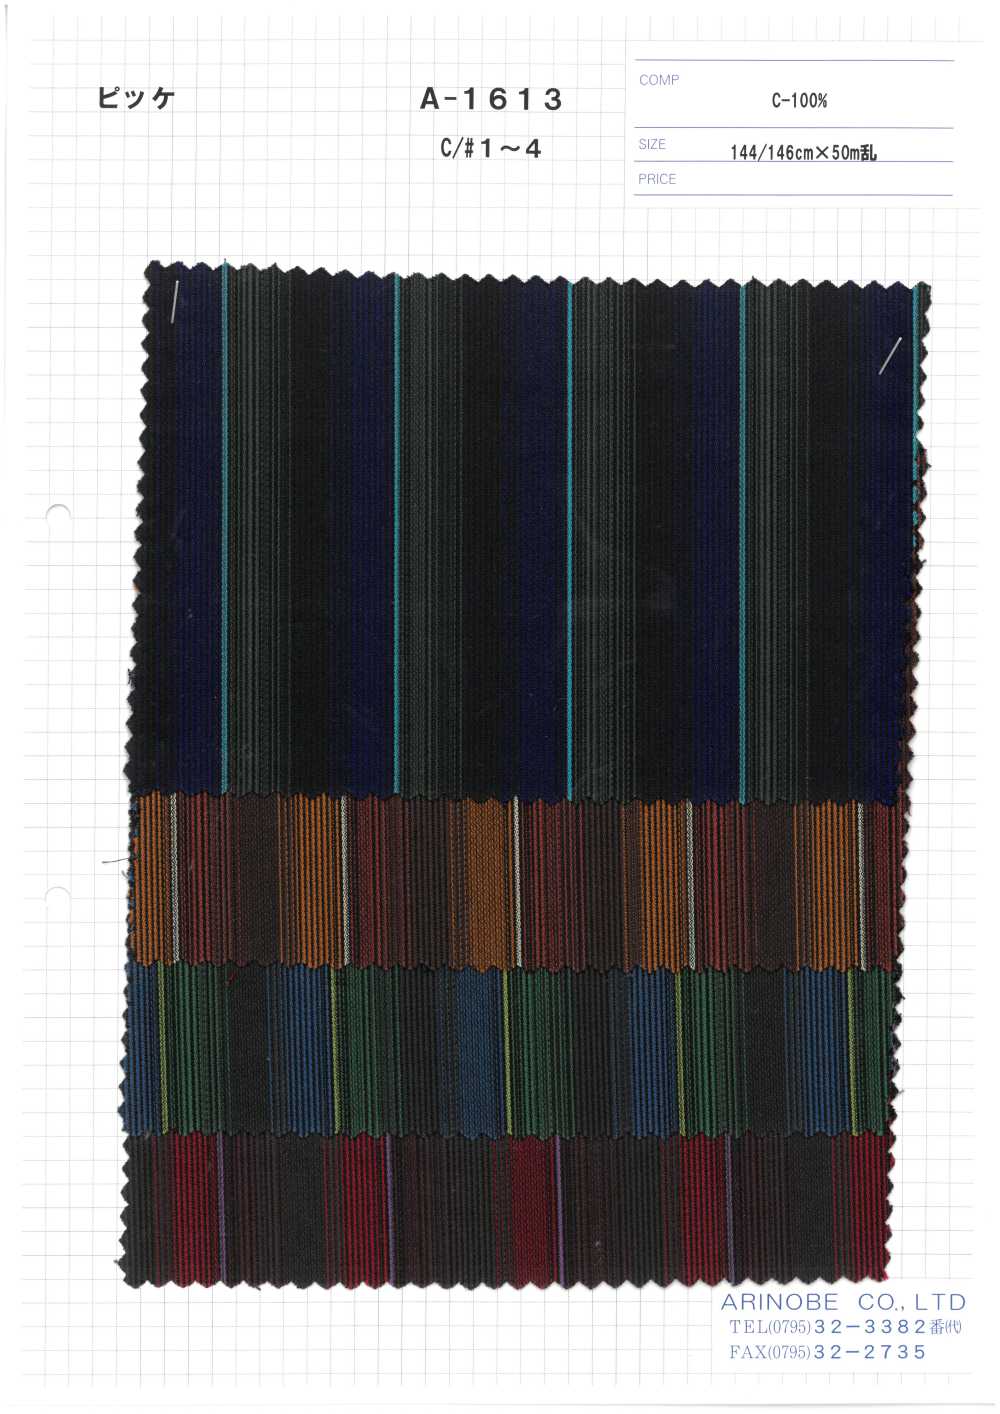 A-1613 Piquê De Algodão[Têxtil / Tecido] ARINOBE CO., LTD.